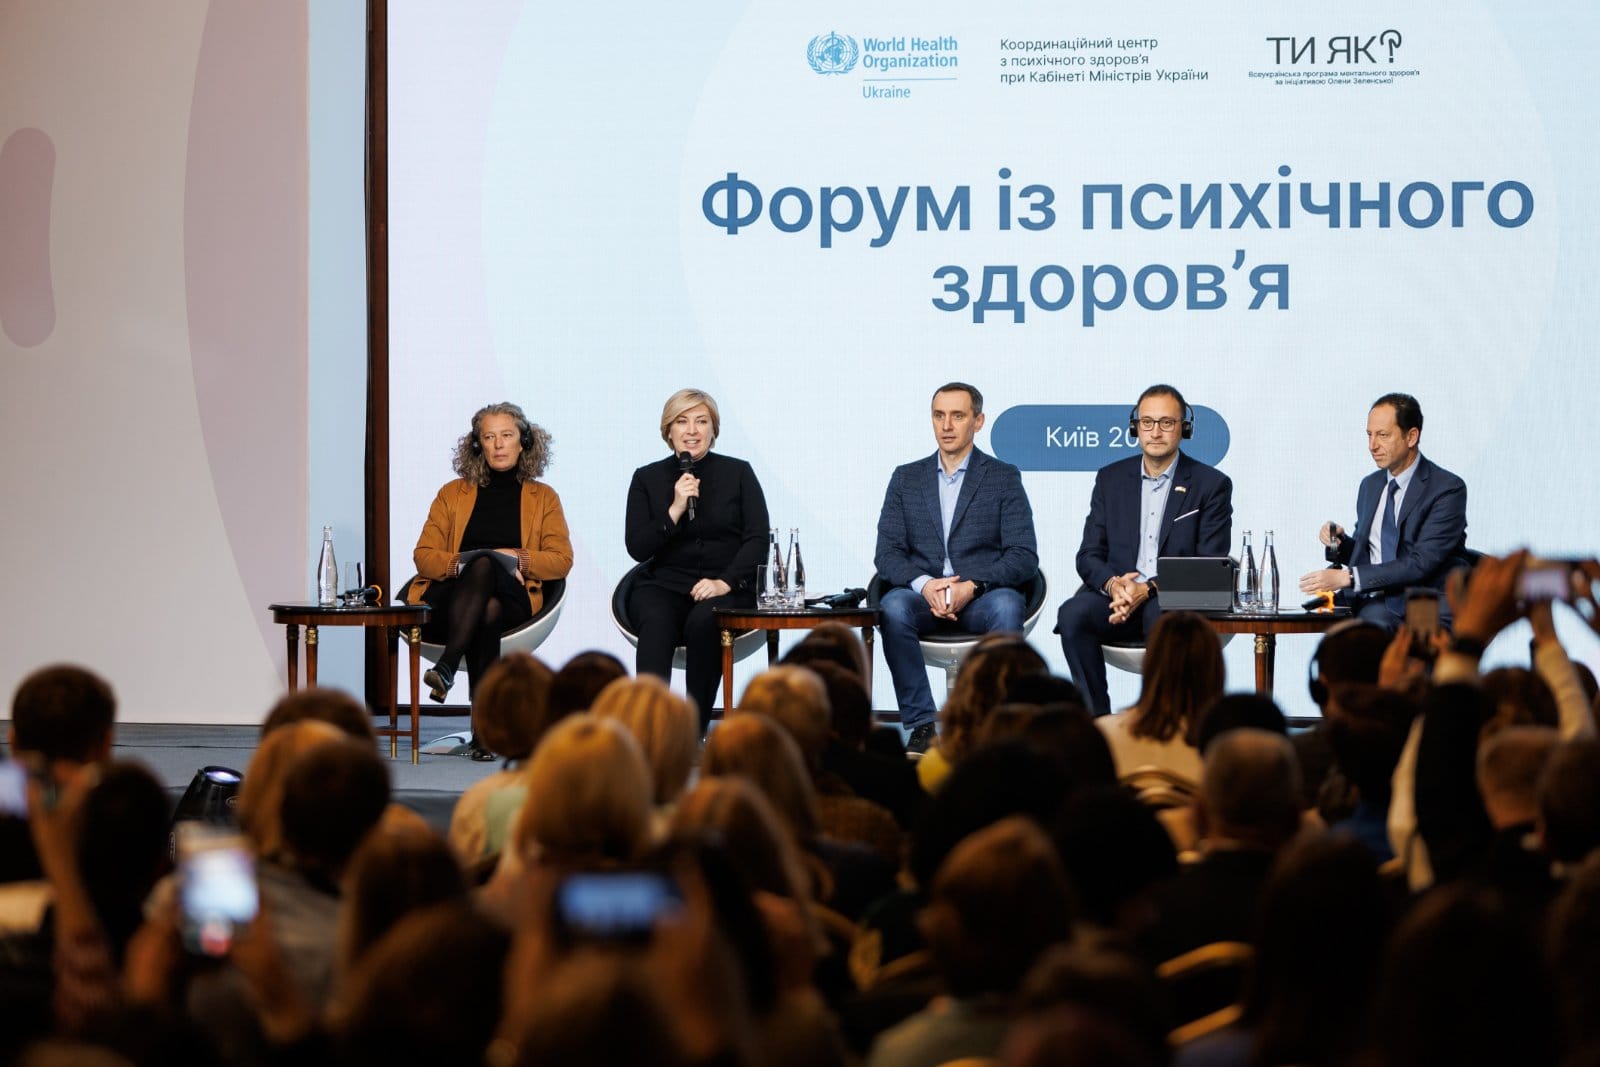 Перший форум з психічного здоров’я відбувся у Києві 18-20 жовтня